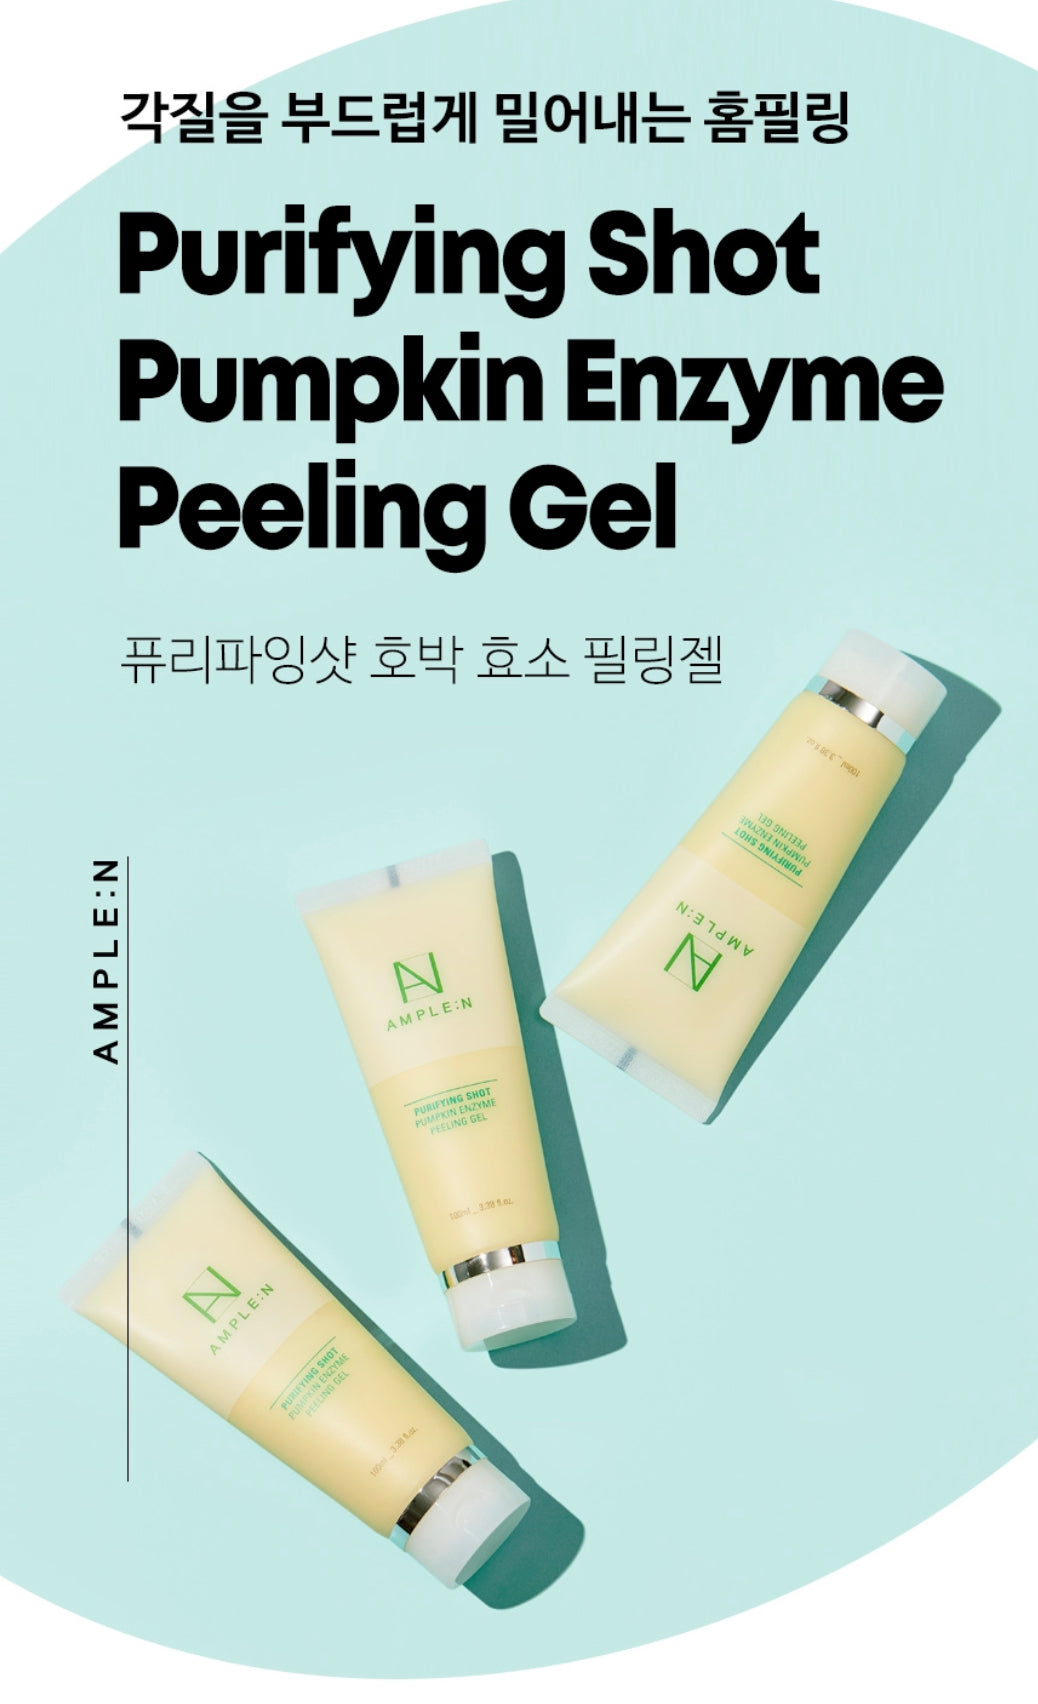 AMPLE:N - Purifying Shot Pumpkin Enzyme Peeling Gel – careskin